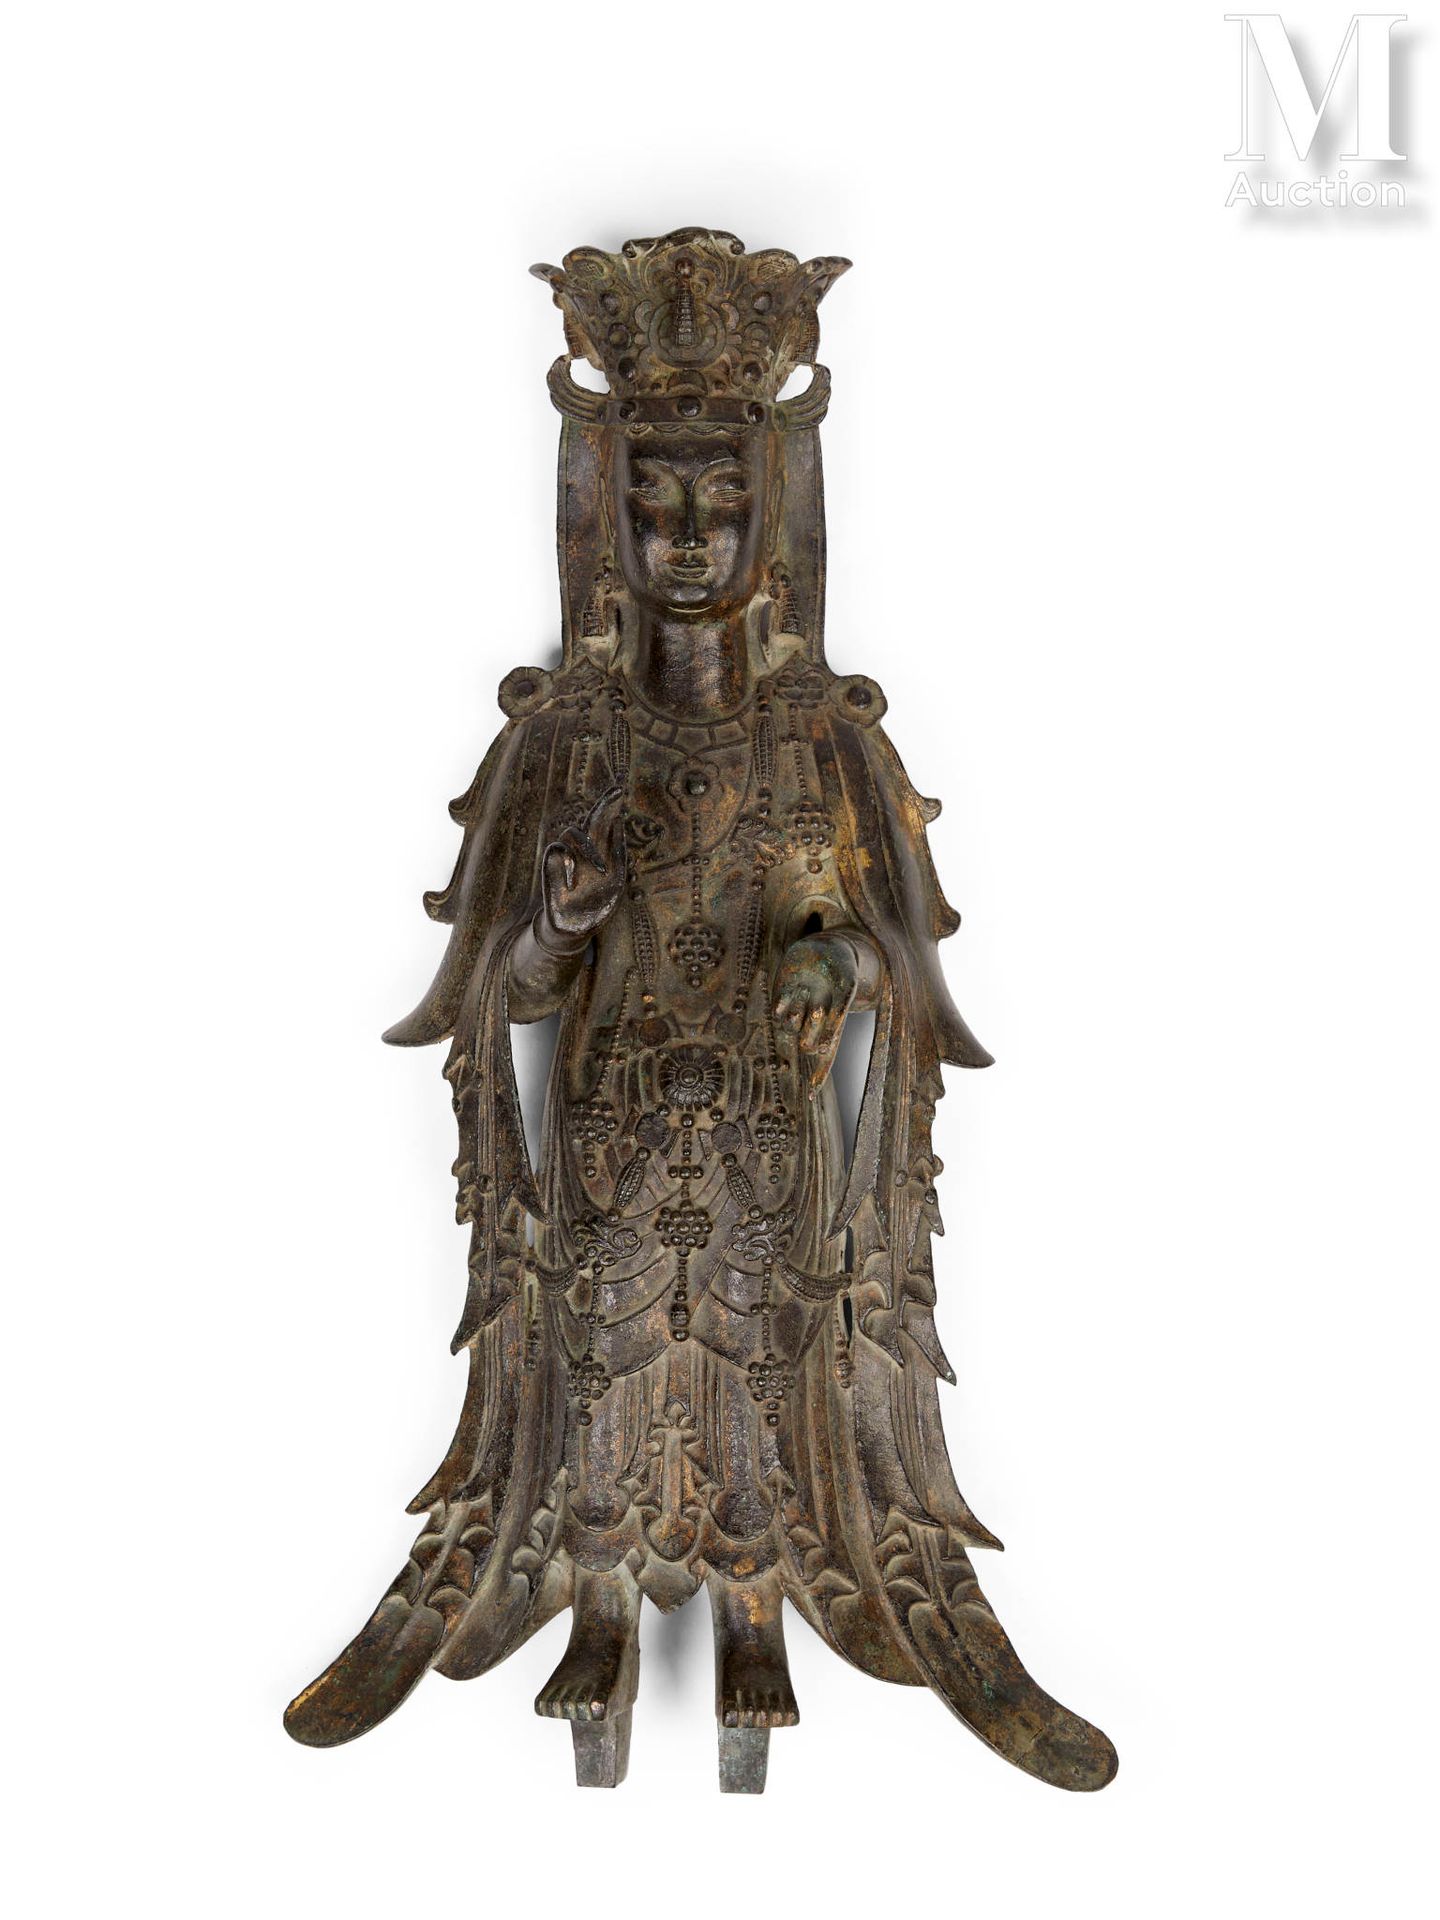 CHINE, Dynastie Sui (581-618) Importante statua in bronzo di Guanyin Pusa

La di&hellip;